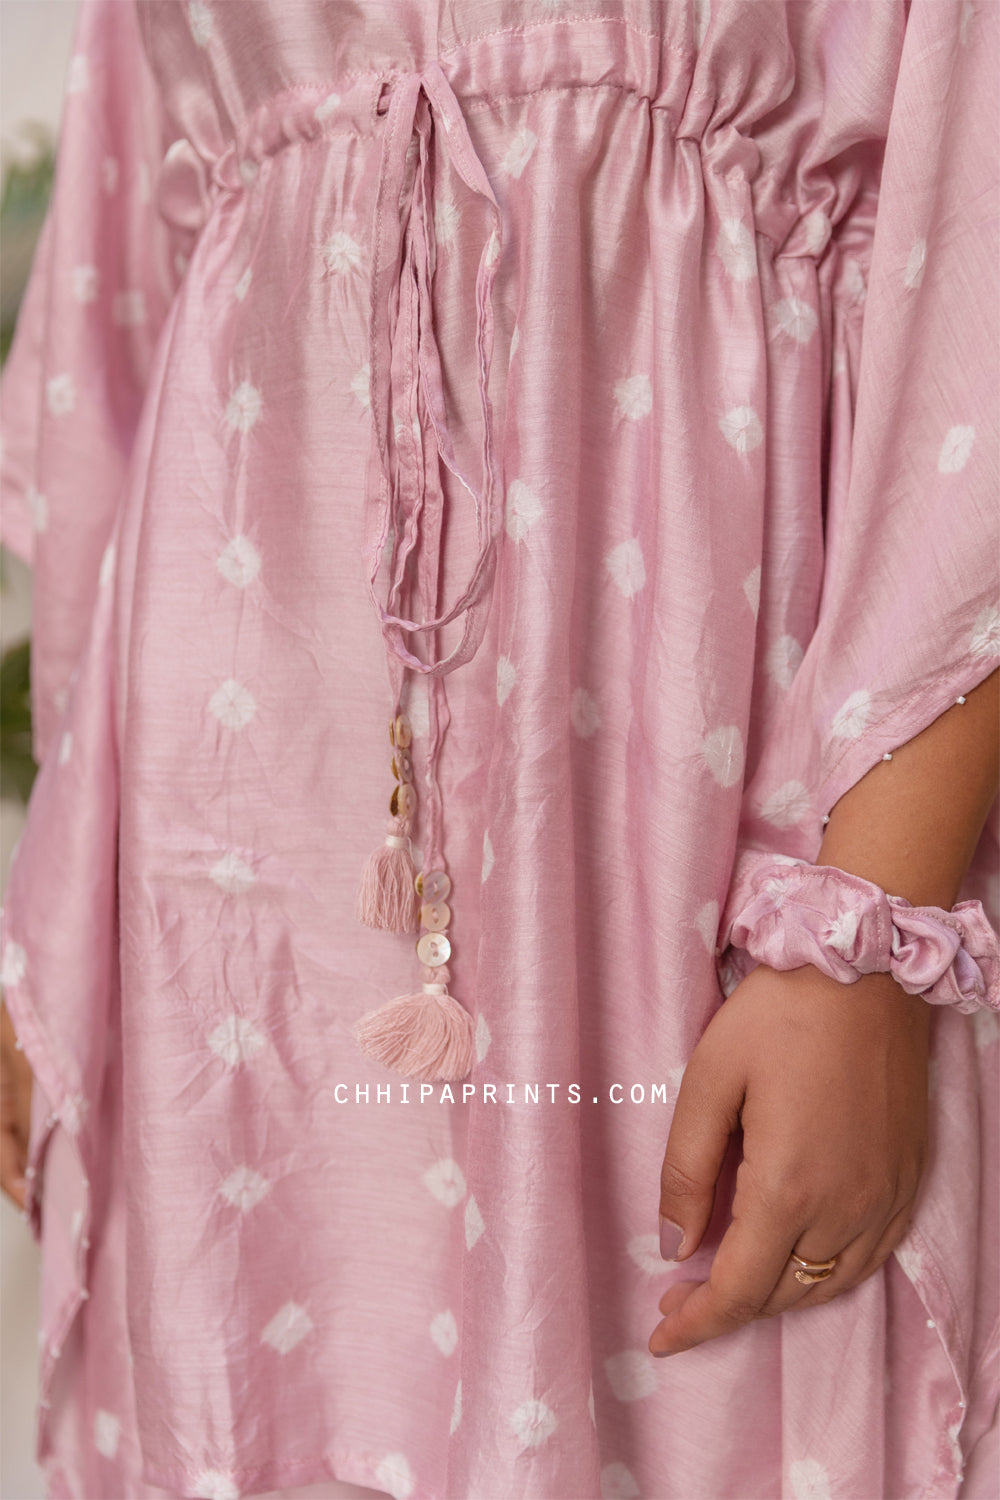 Cotton Silk Bandhani Co Ord Set in Dawn Pink